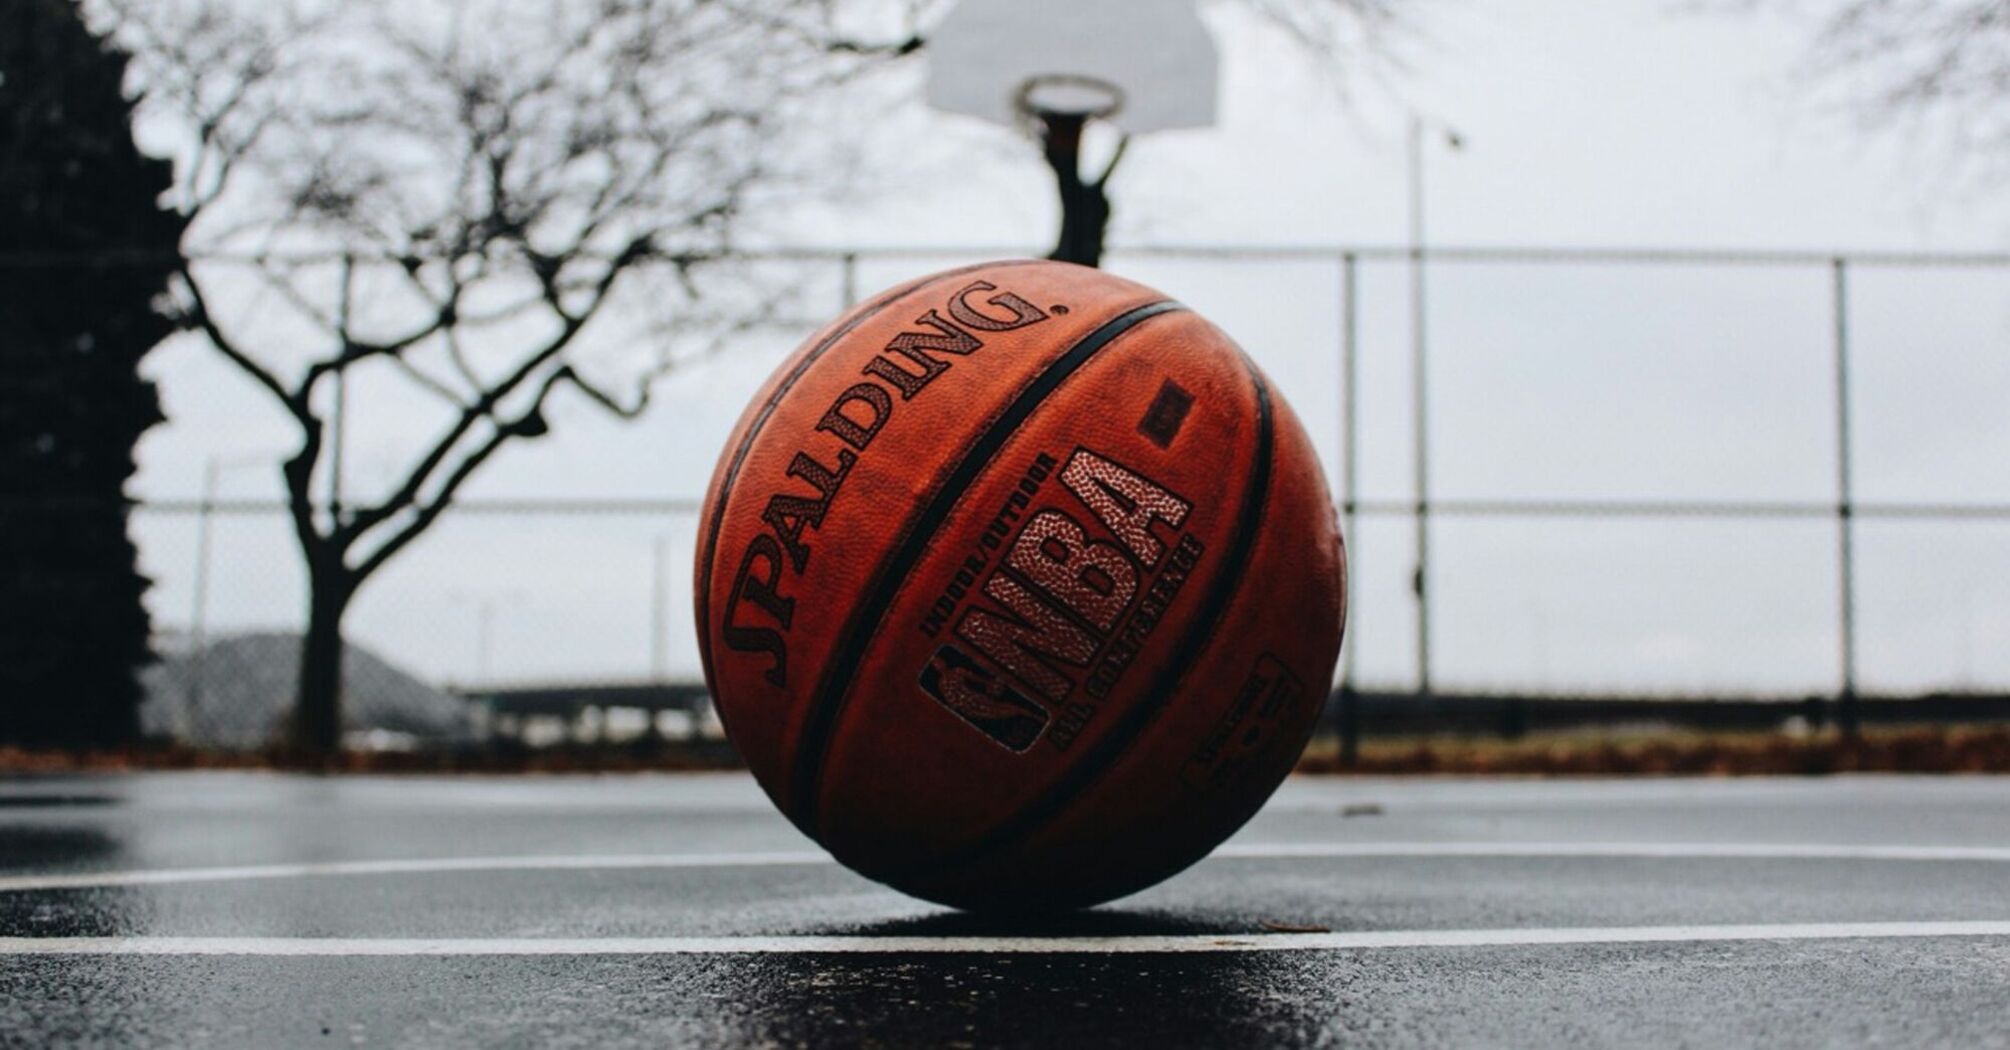 NBA basketball lies on the playground